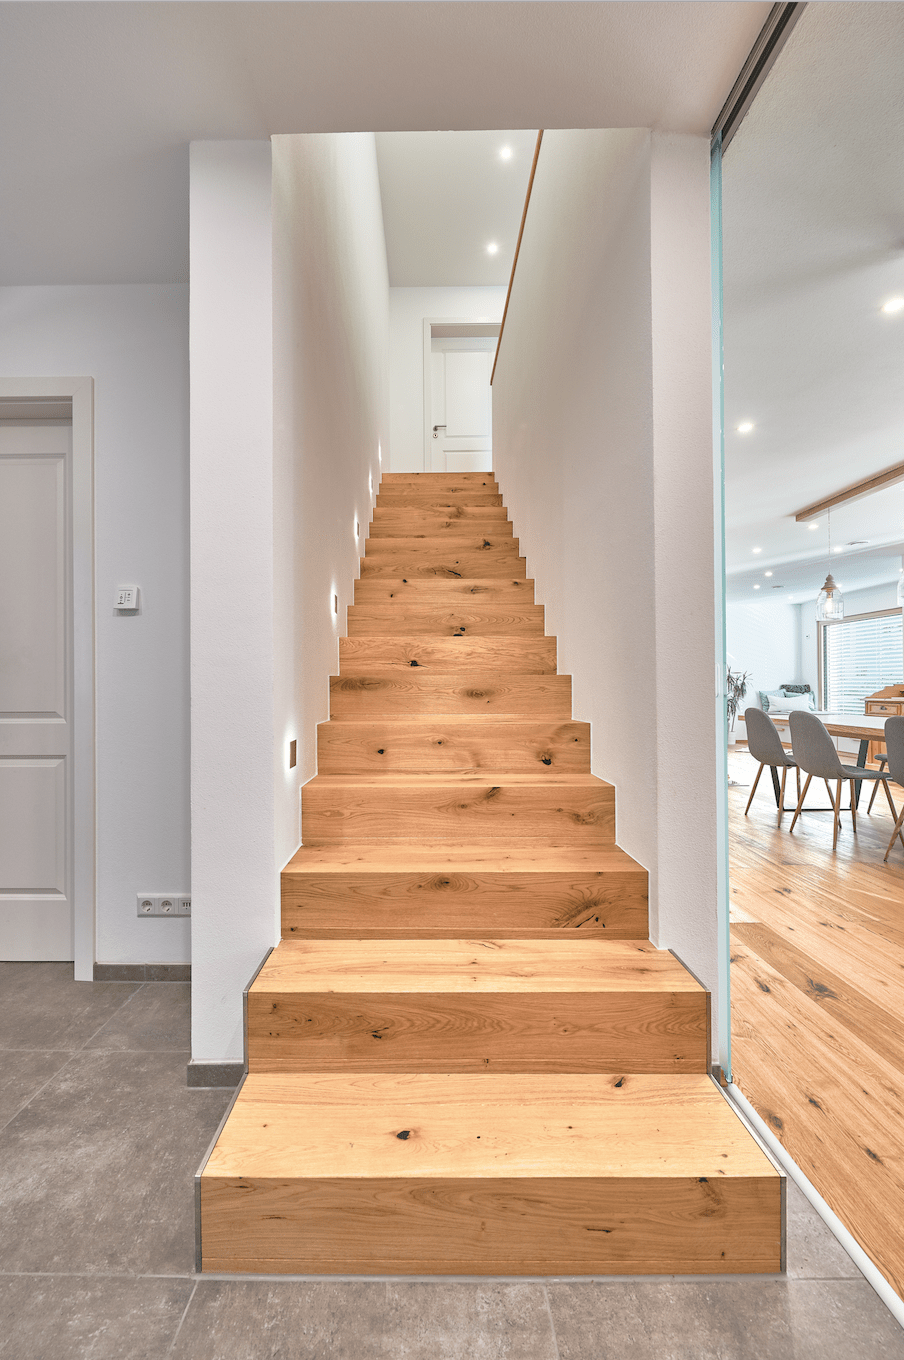 Gerade Treppe massiv aus Holz - Haus Design Ideen innen Modernes Landhaus WeberHaus Fertighaus - HausbauDirekt.de